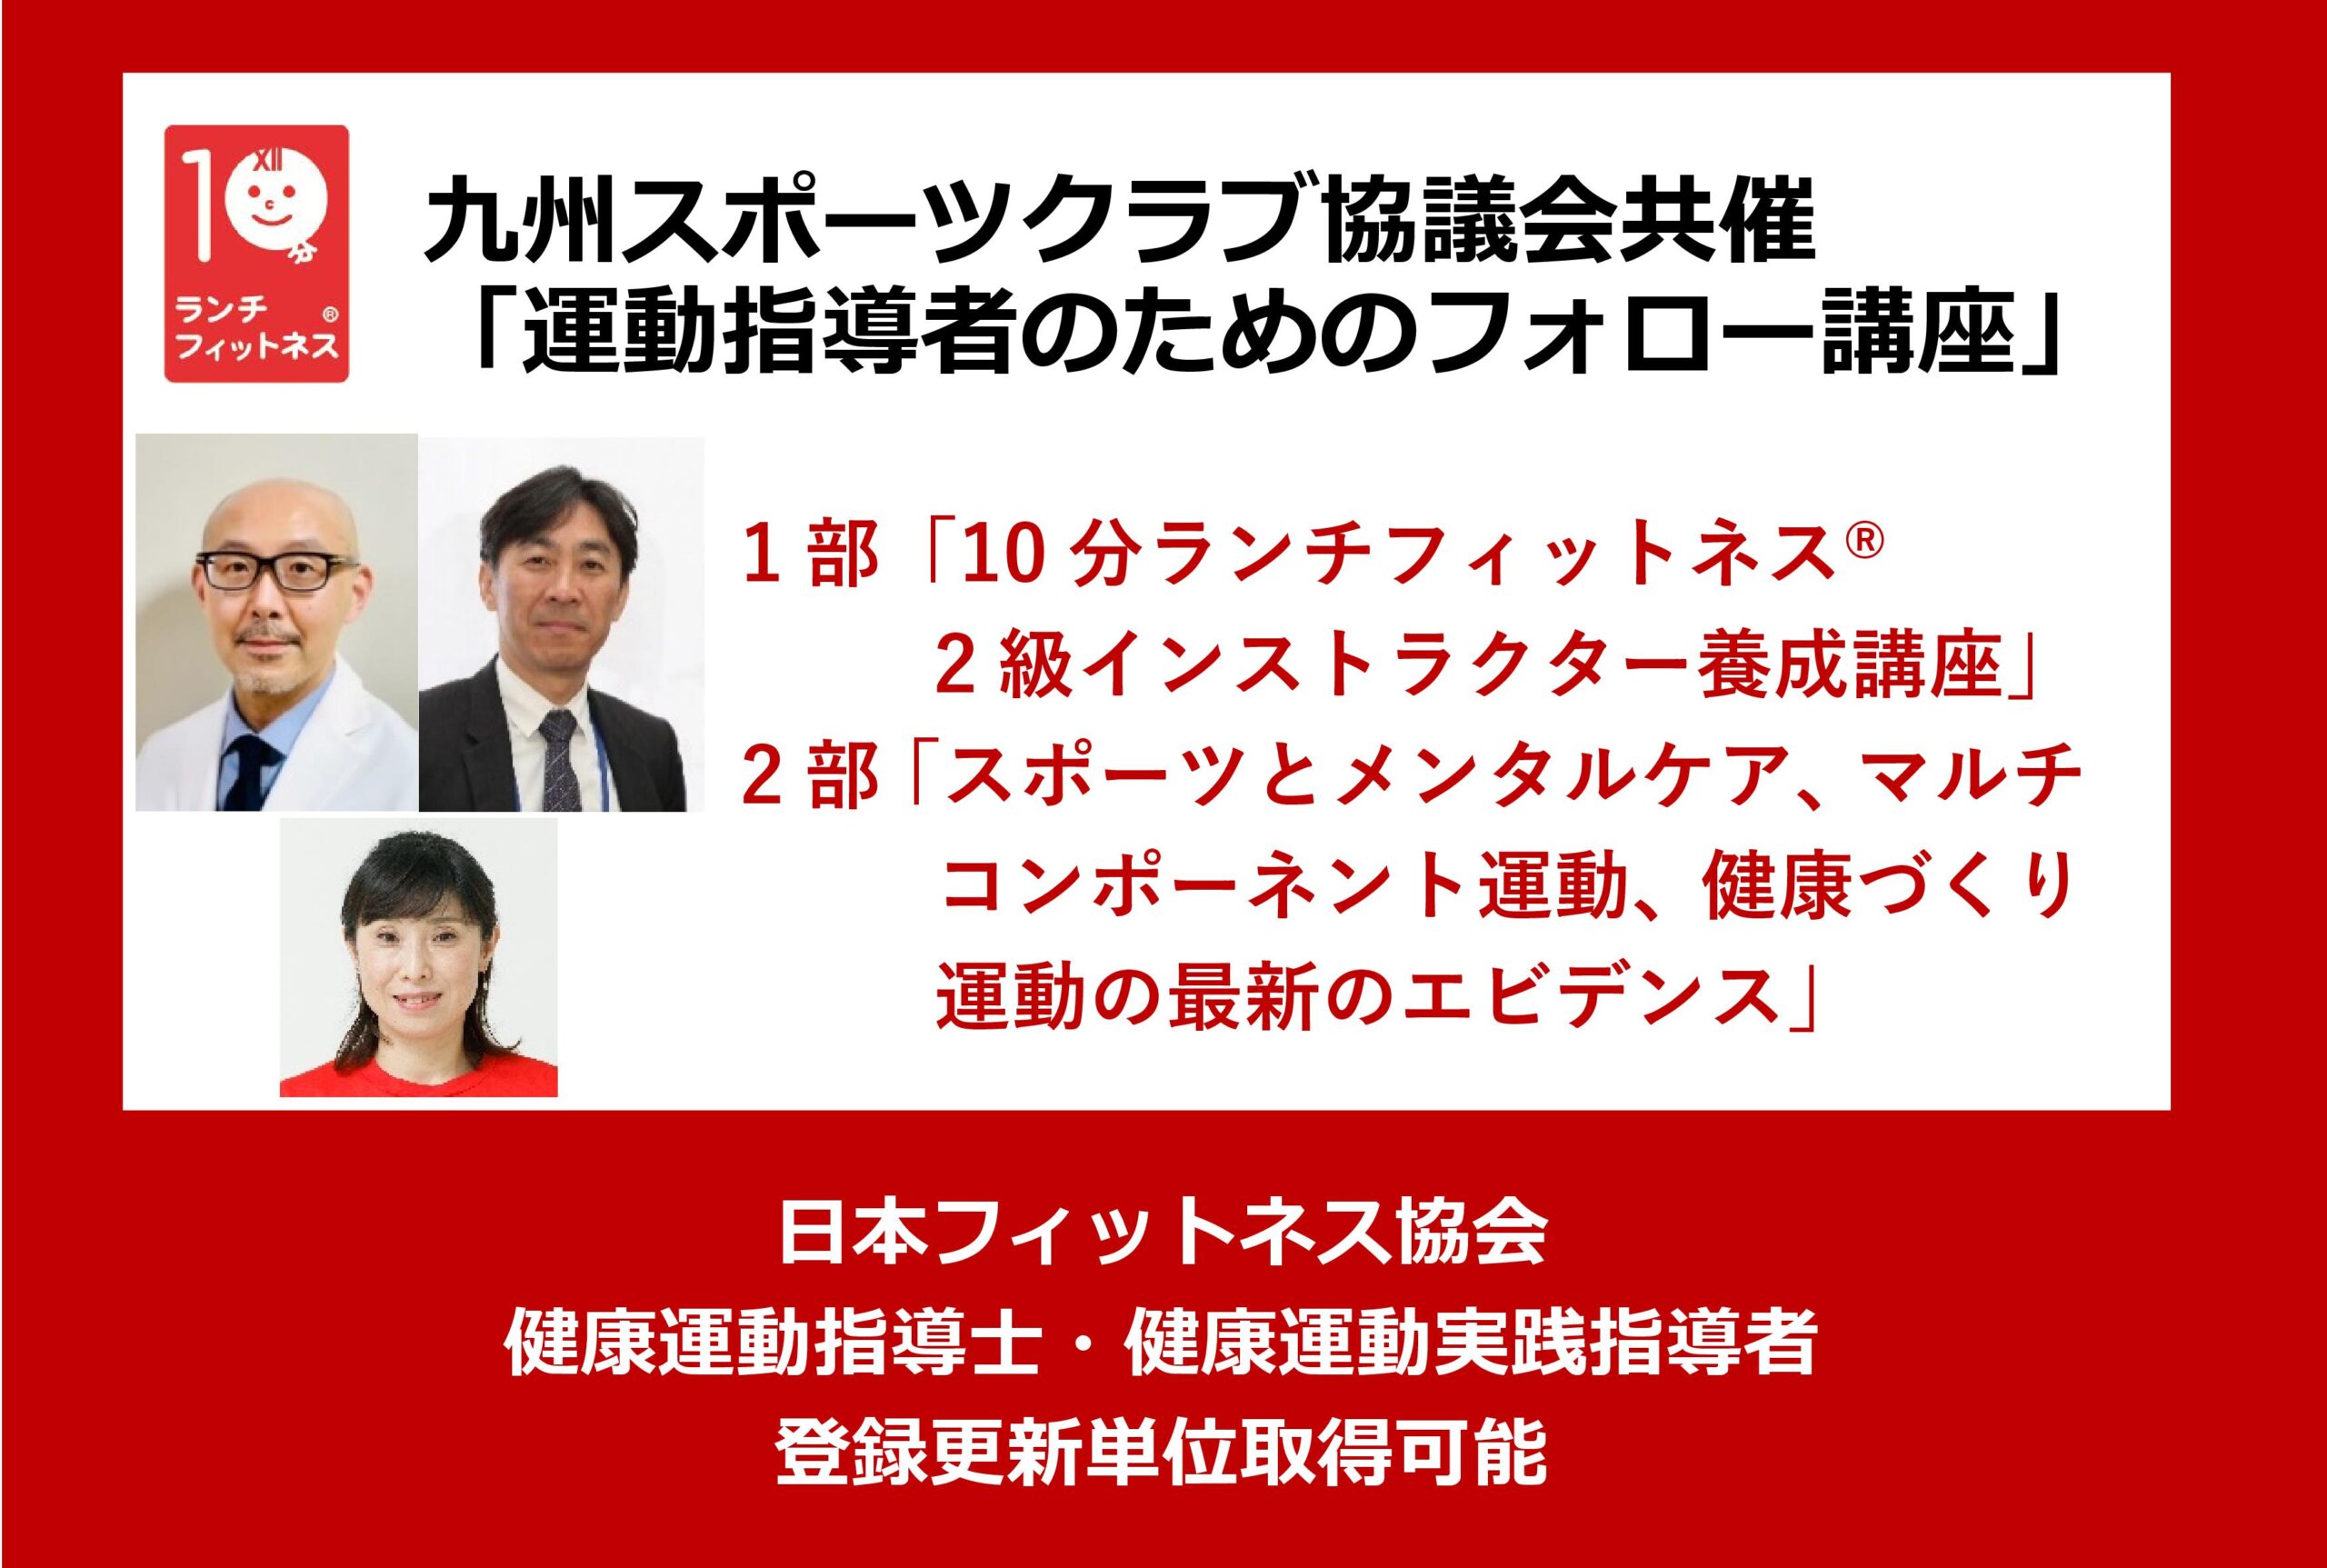 九州スポーツクラブ協議会共催「運動指導者のためのフォロー講座」を開催します